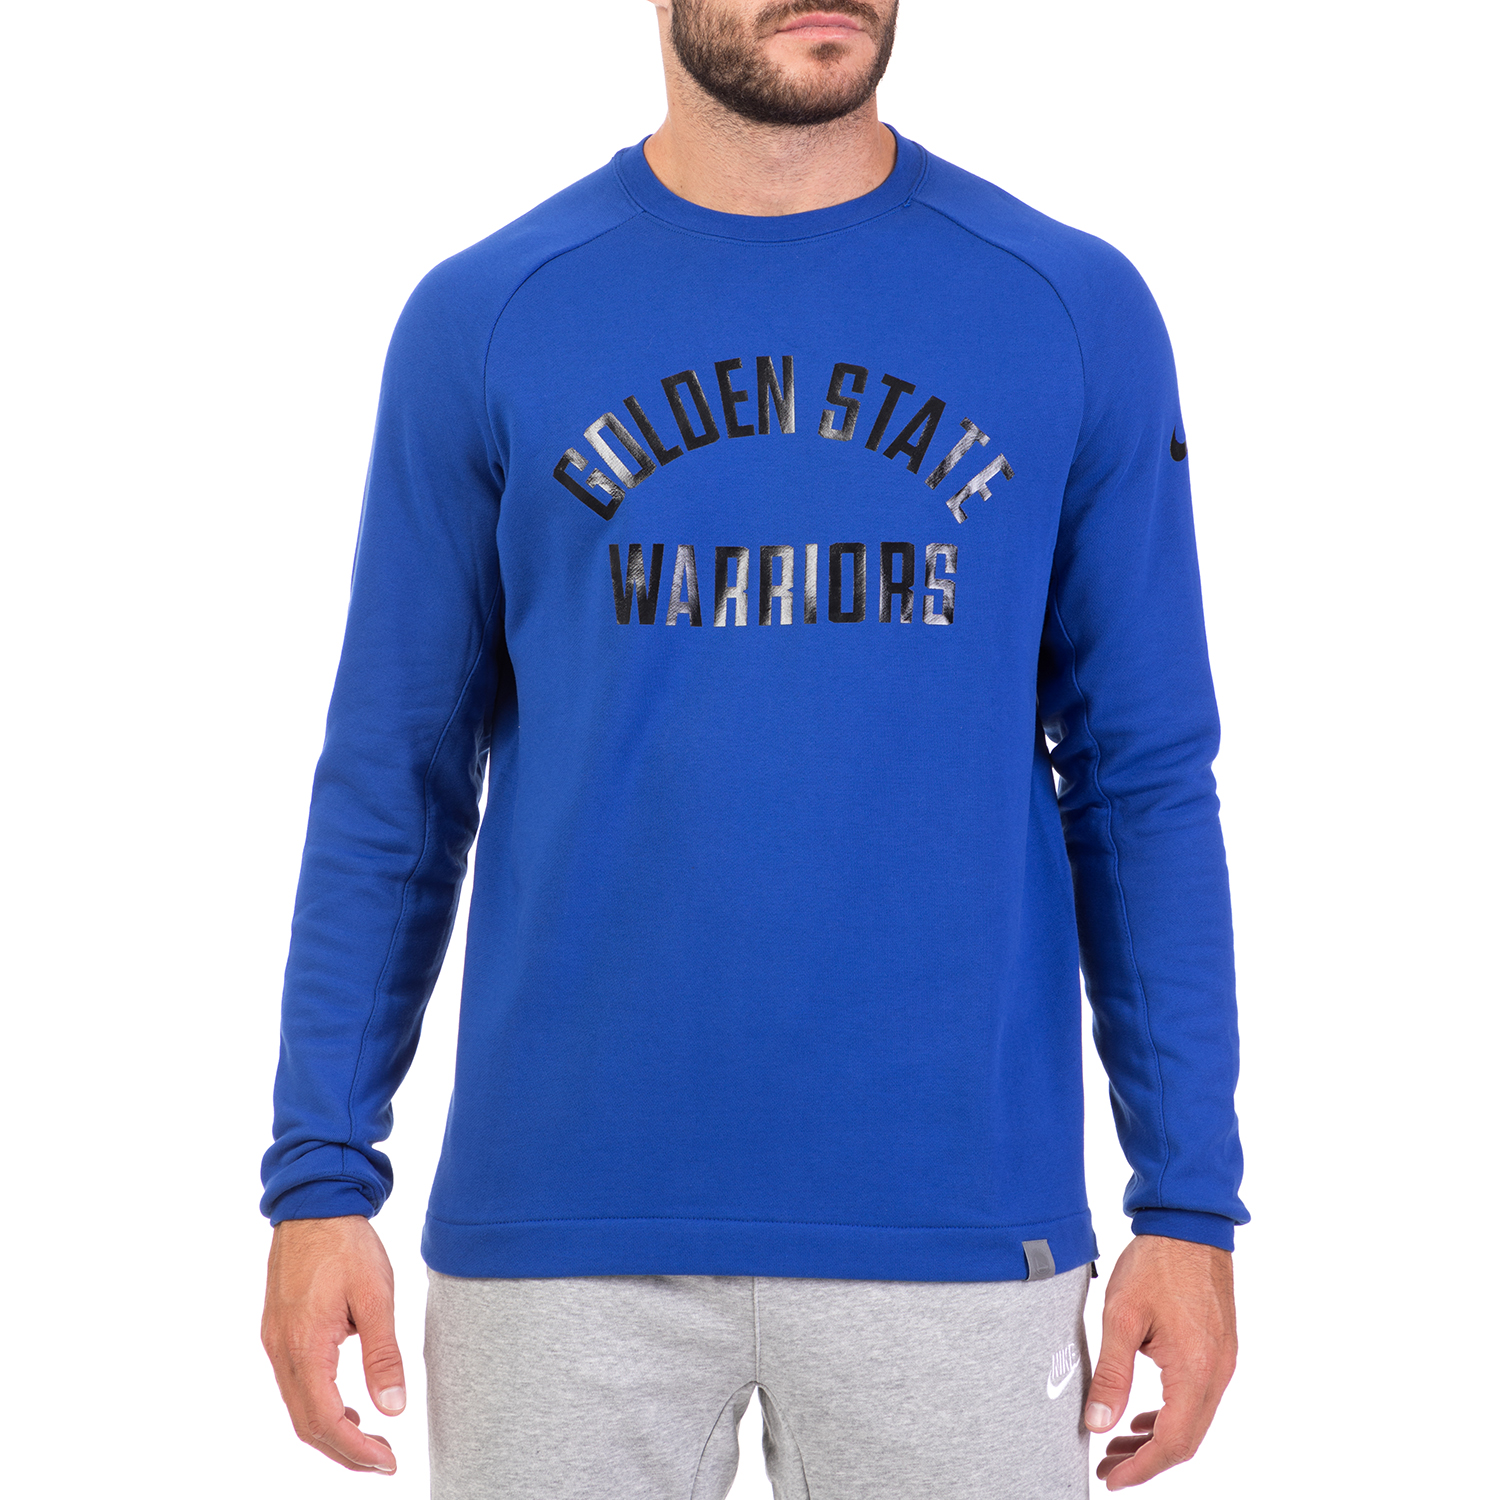 NIKE - Ανδρική φούτερ μπλούζα NIKE MDRN CREW FT μπλε Ανδρικά/Ρούχα/Αθλητικά/Φούτερ-Μακρυμάνικα